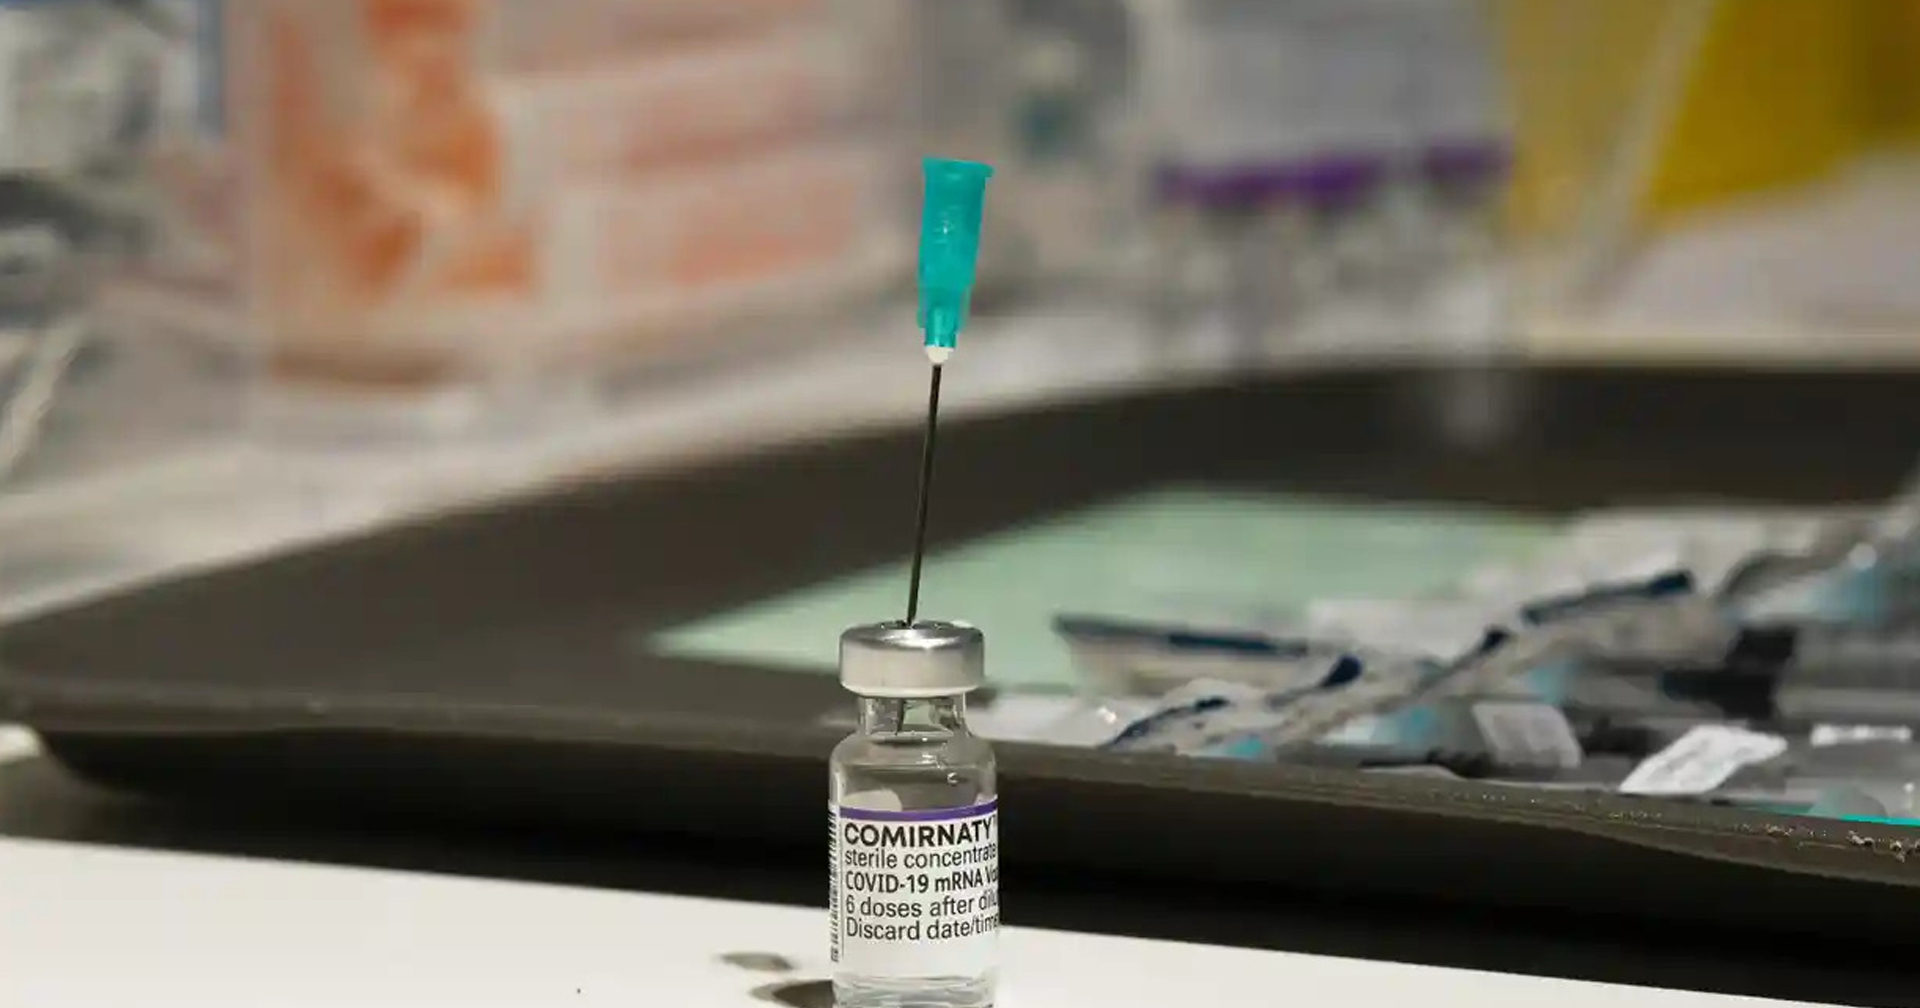 ชายเยอรมันฉีดวัคซีนโควิด-19 90 เข็ม เพื่อขายบัตรฉีดวัคซีนให้คนไม่อยากฉีด